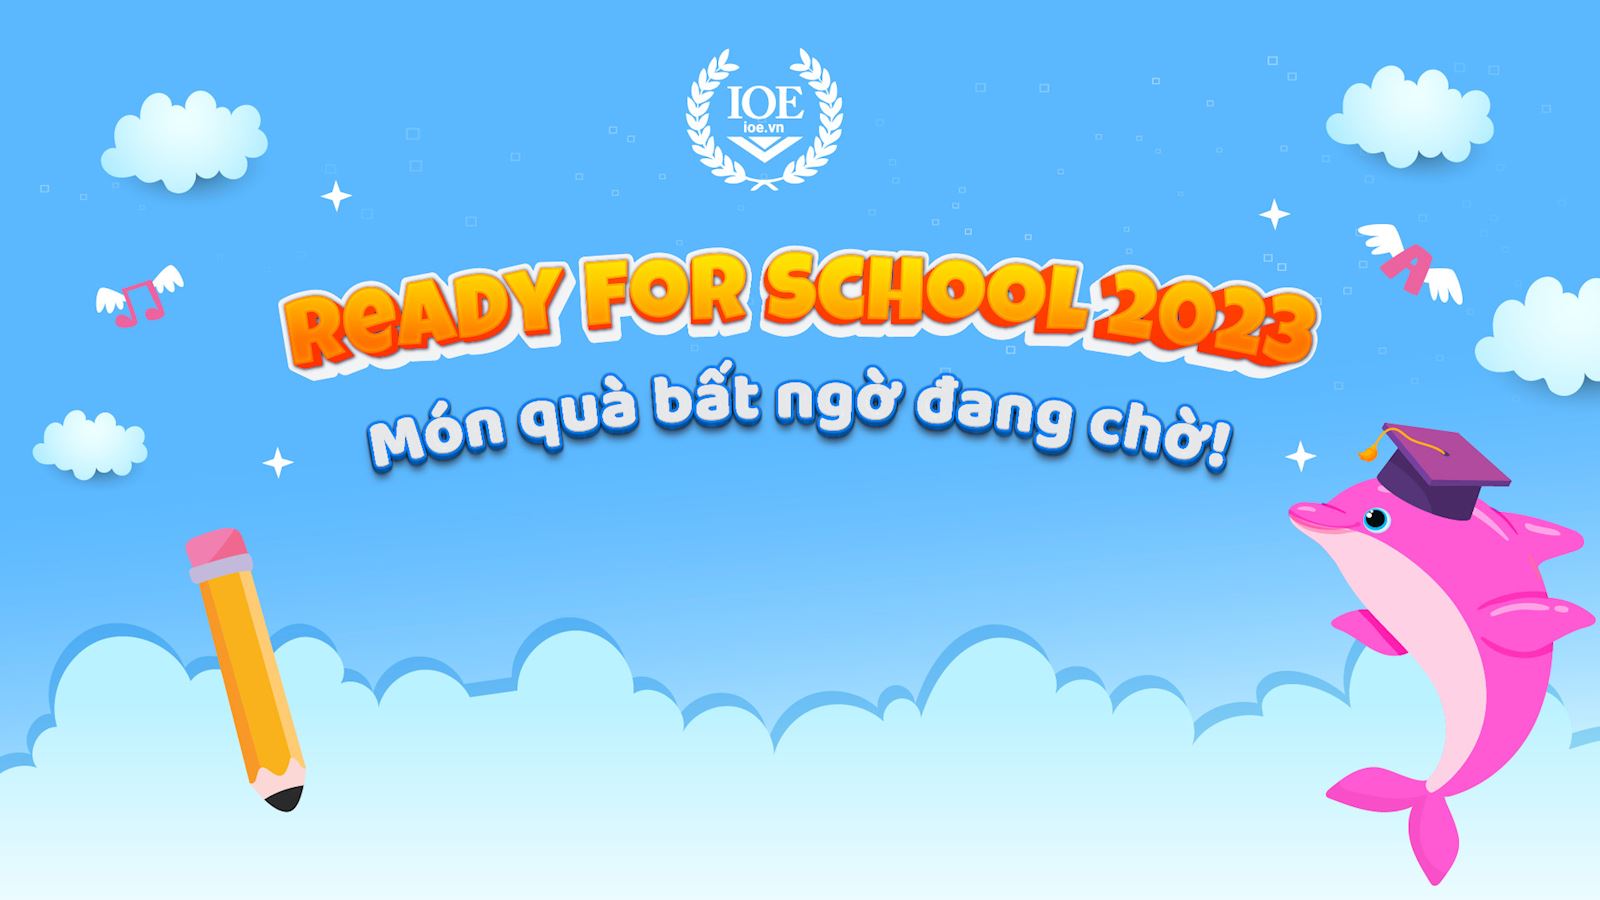 Ready for School 2023: Món quà bất ngờ đang chờ!